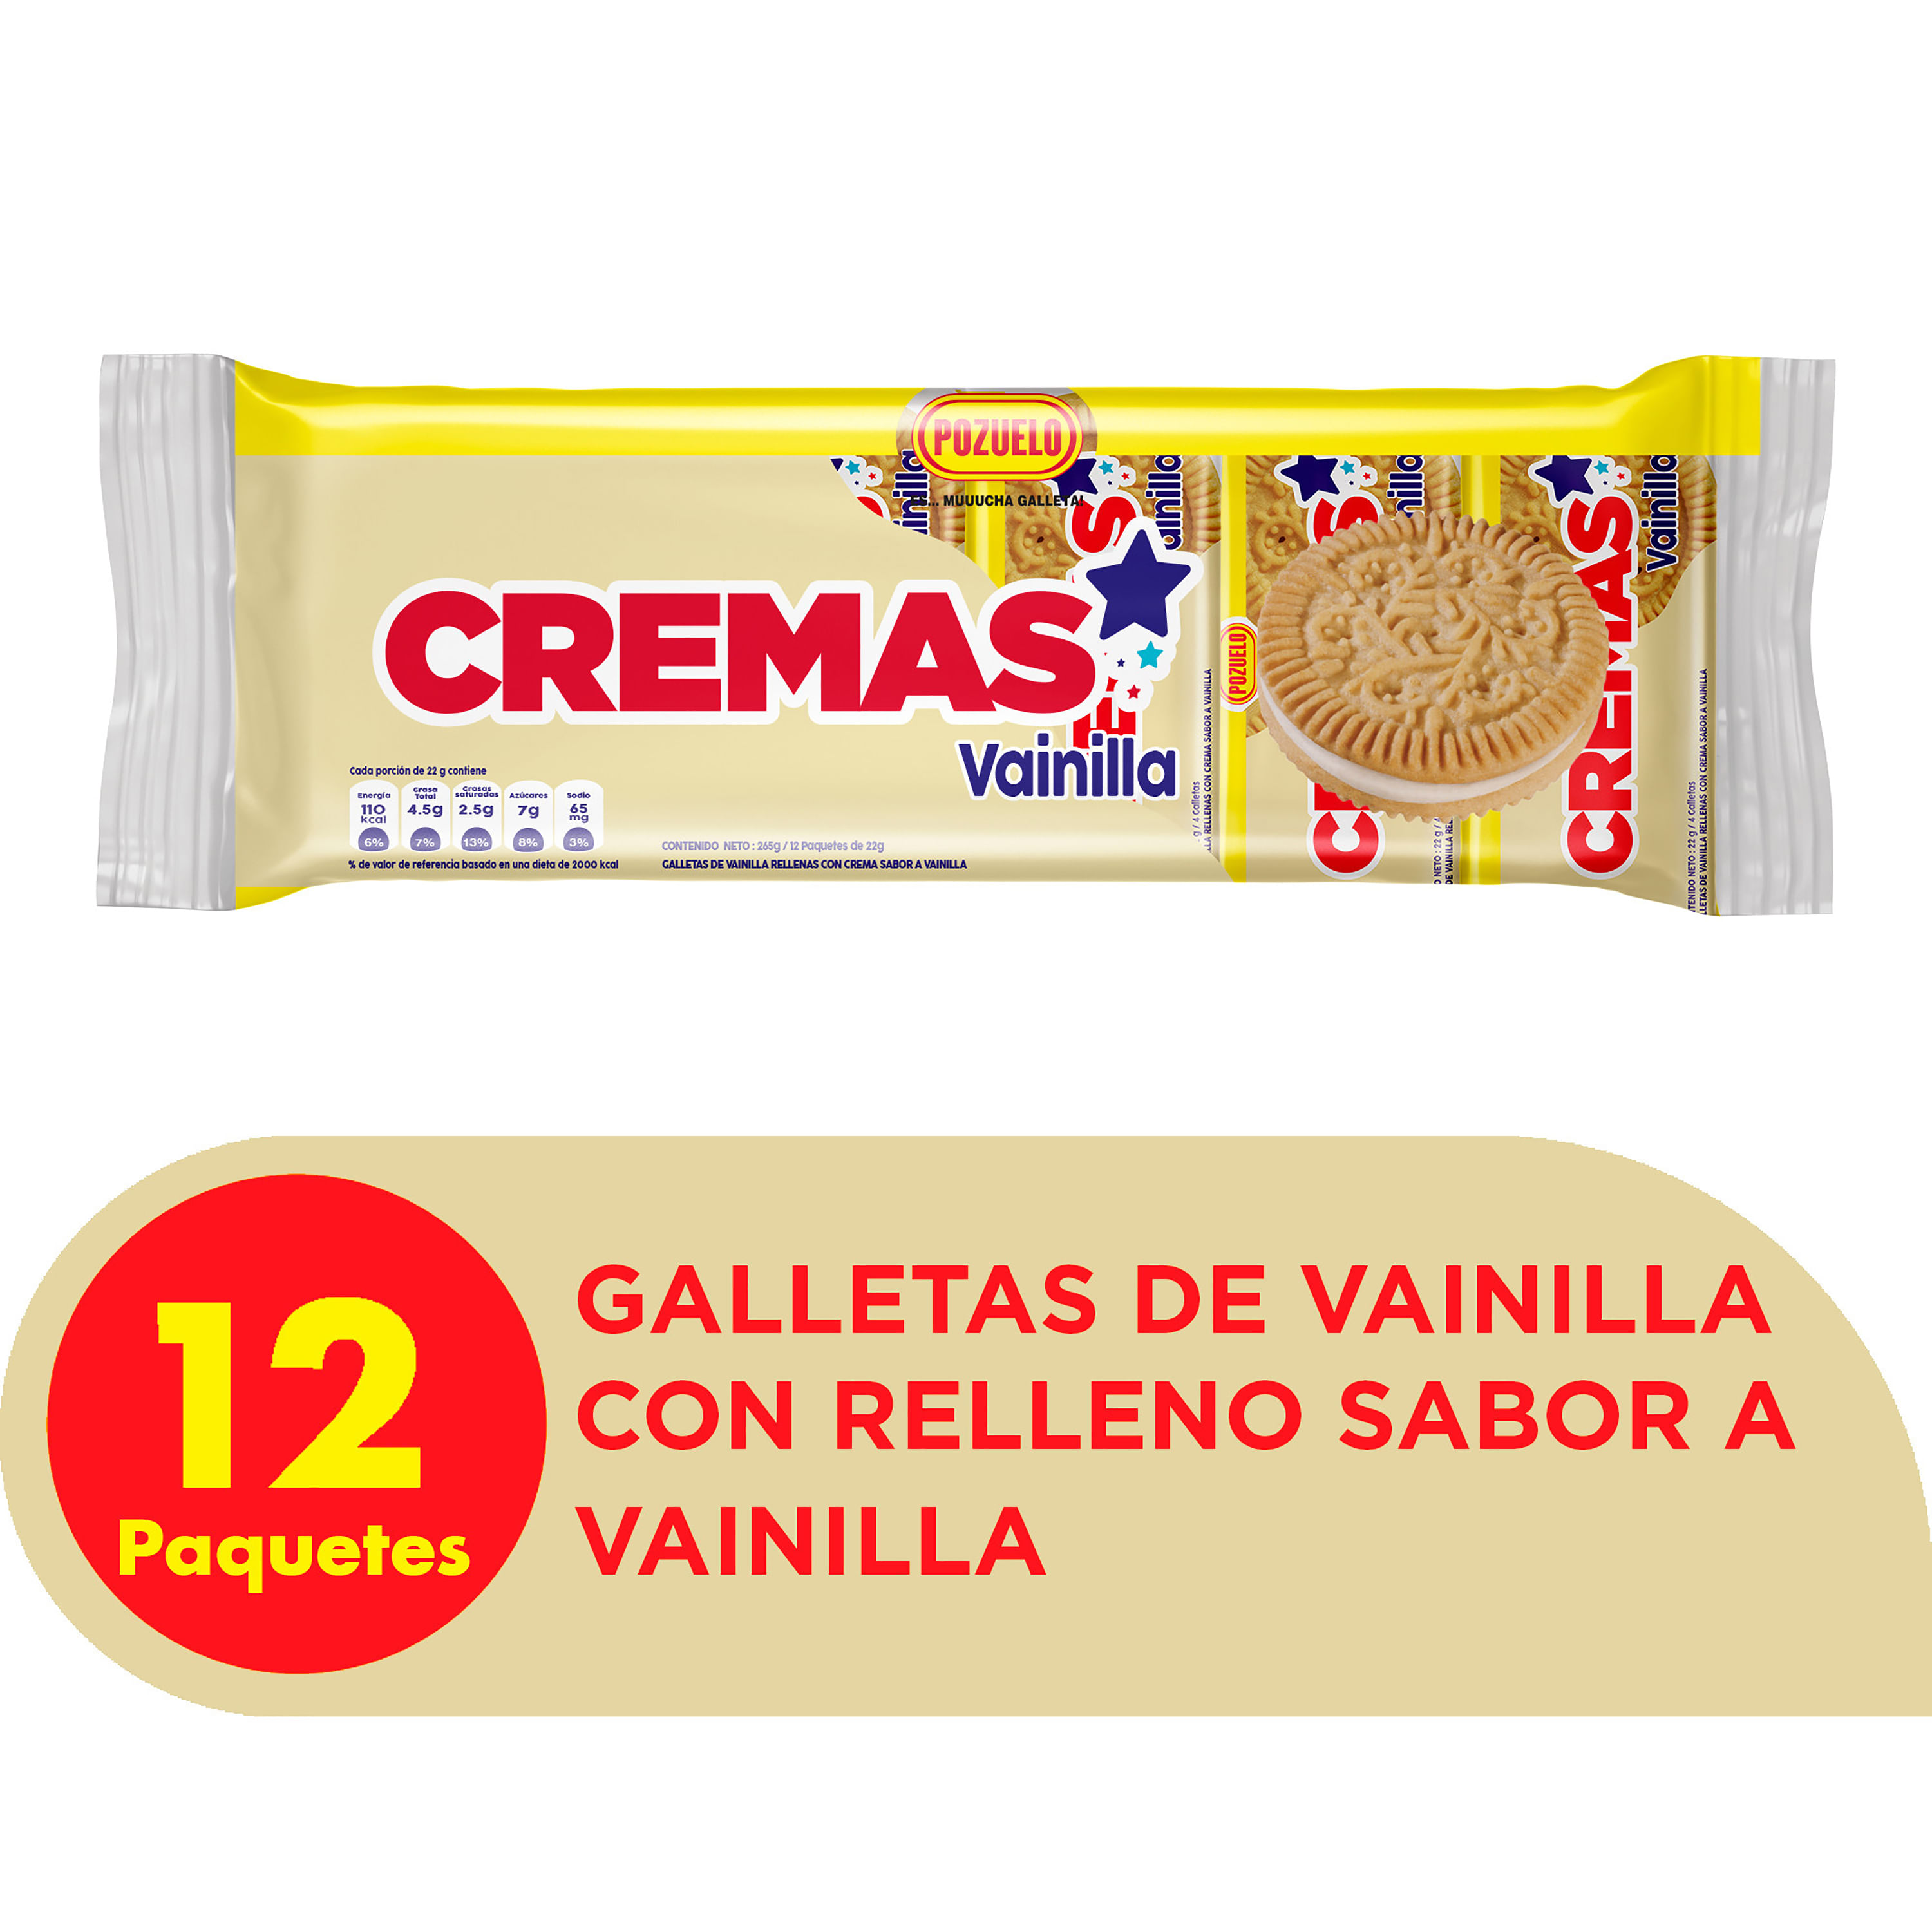 Comprar Galletas Mantequilla Pozuelo -312g